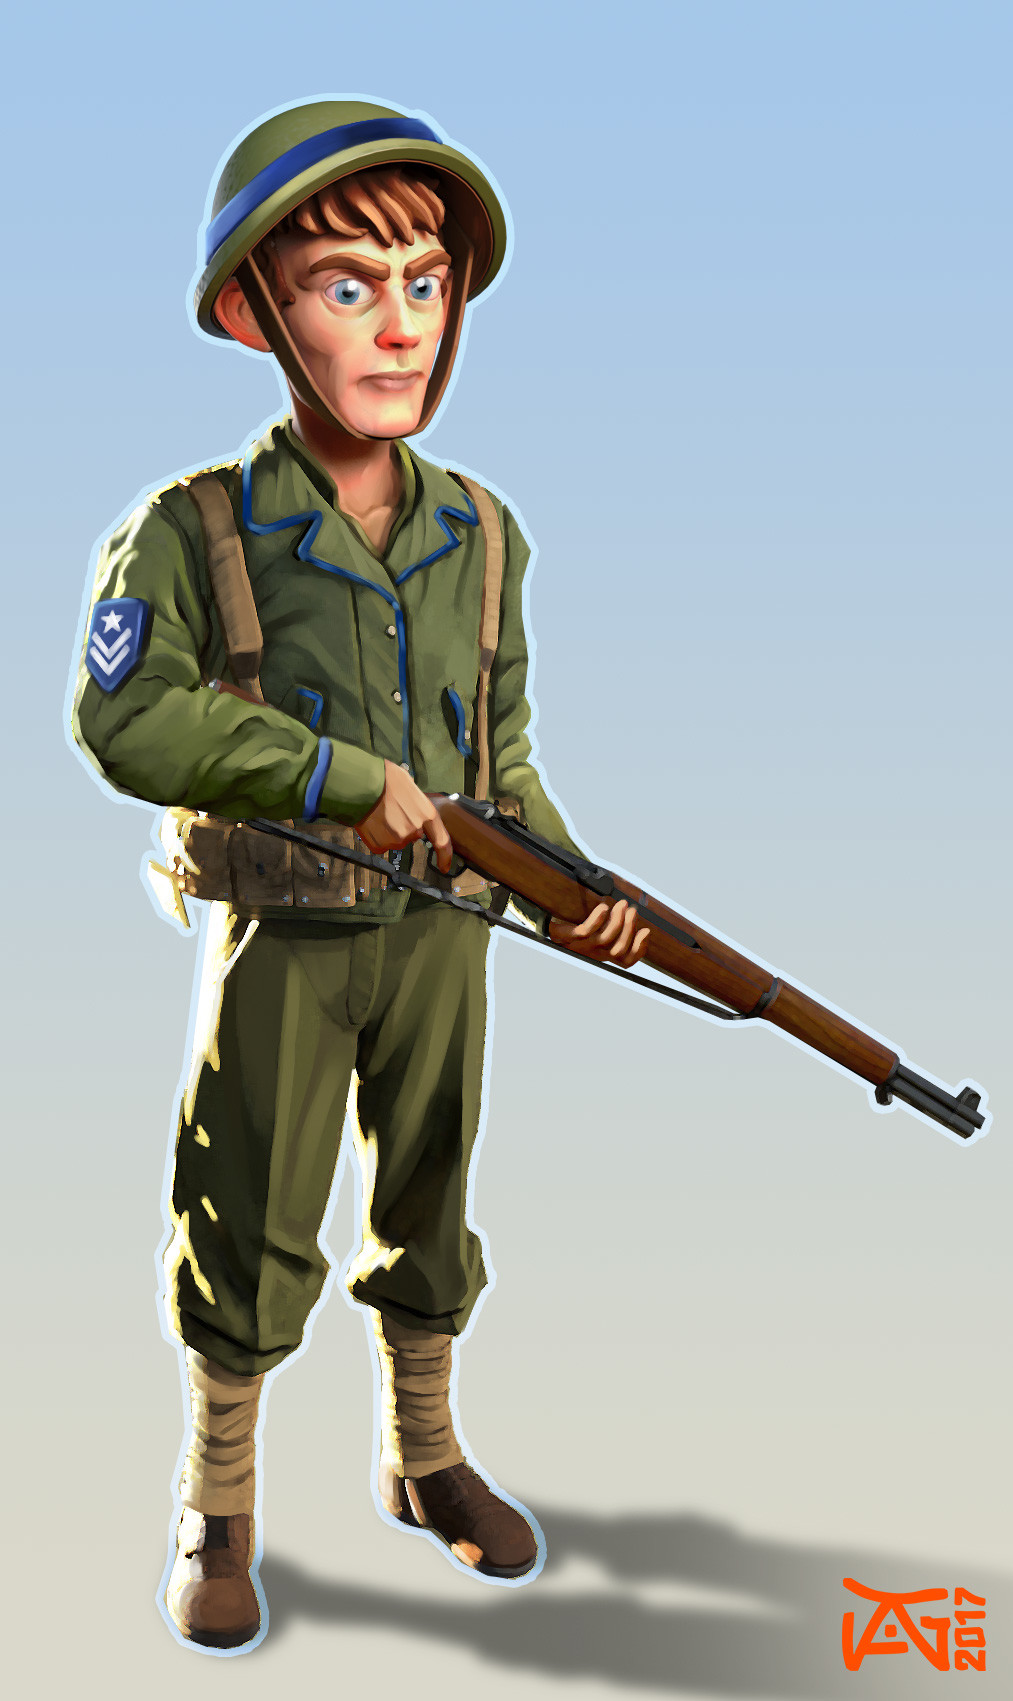 ArtStation - Cartoon Soldier